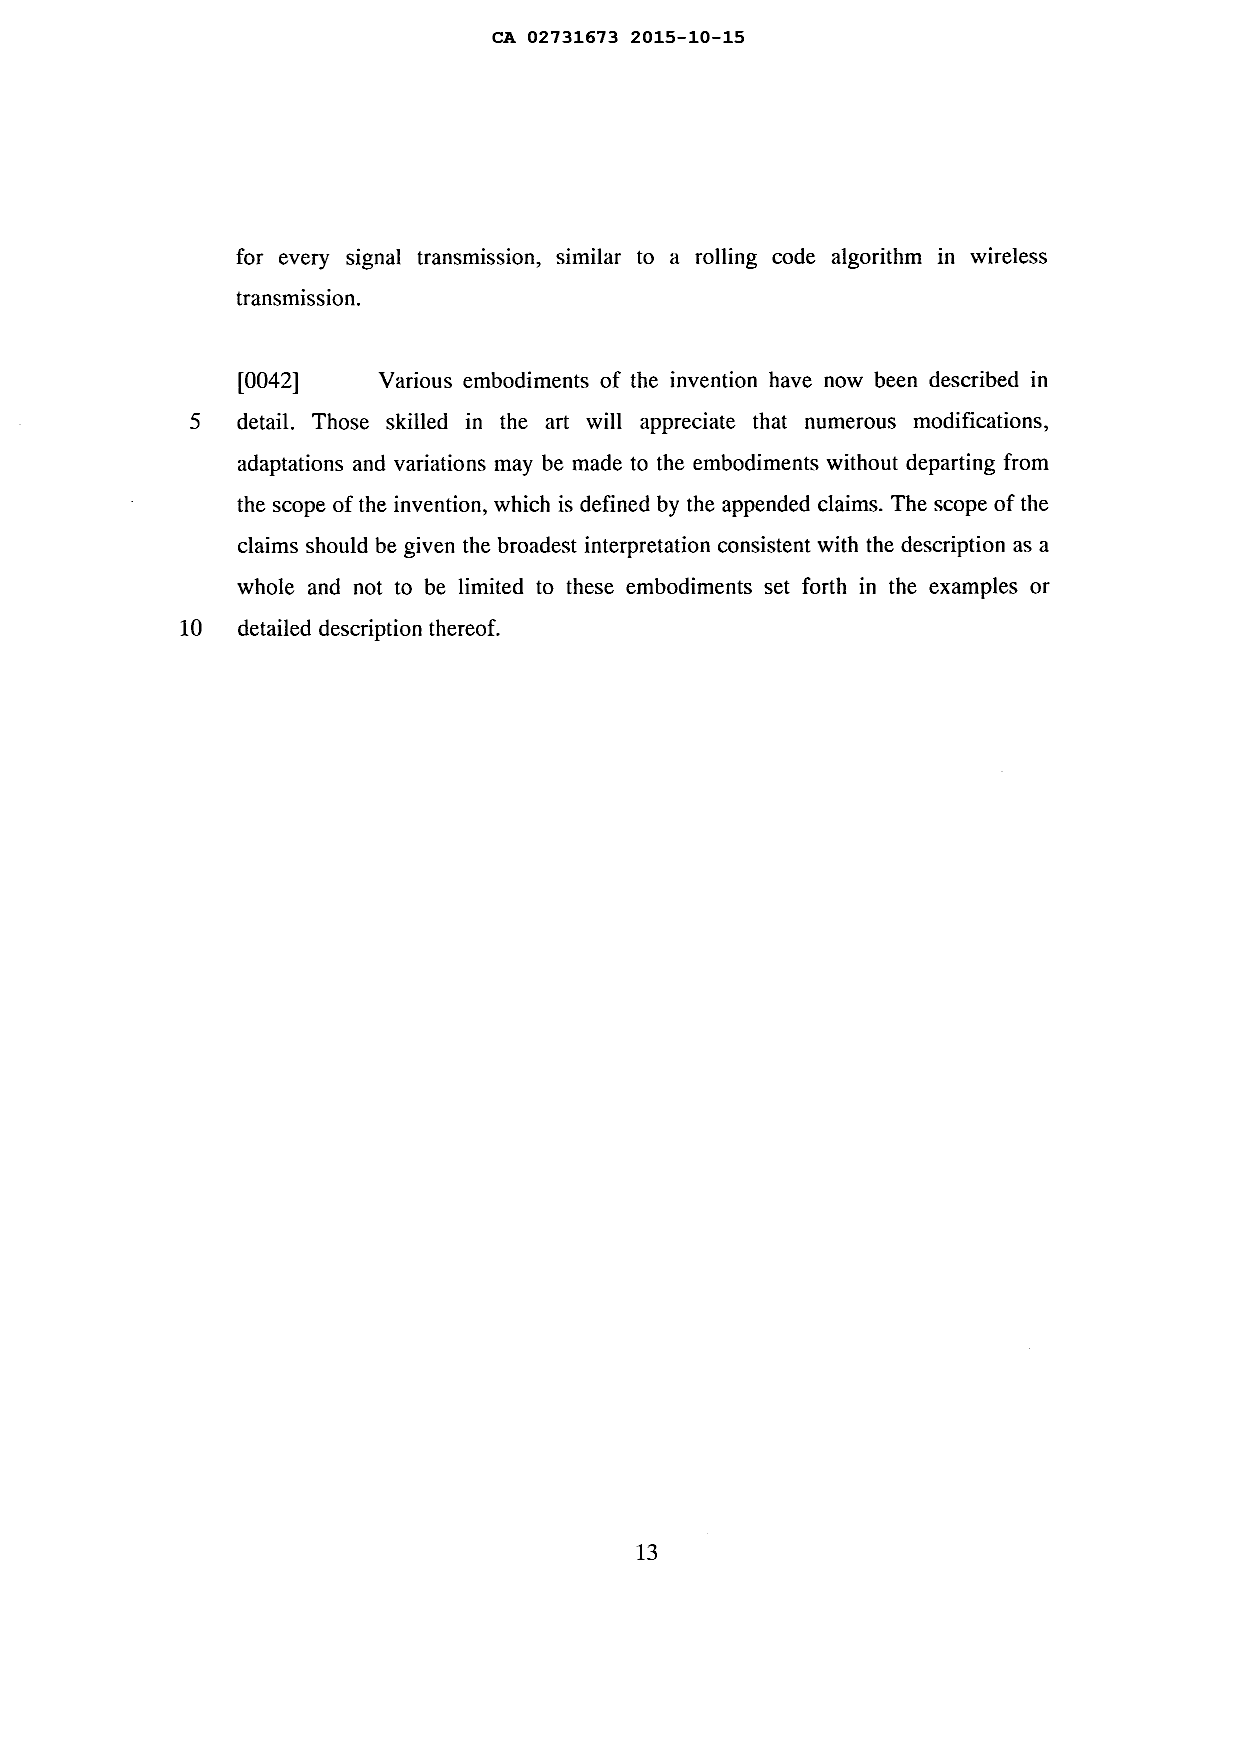 Canadian Patent Document 2731673. Description 20151015. Image 13 of 13